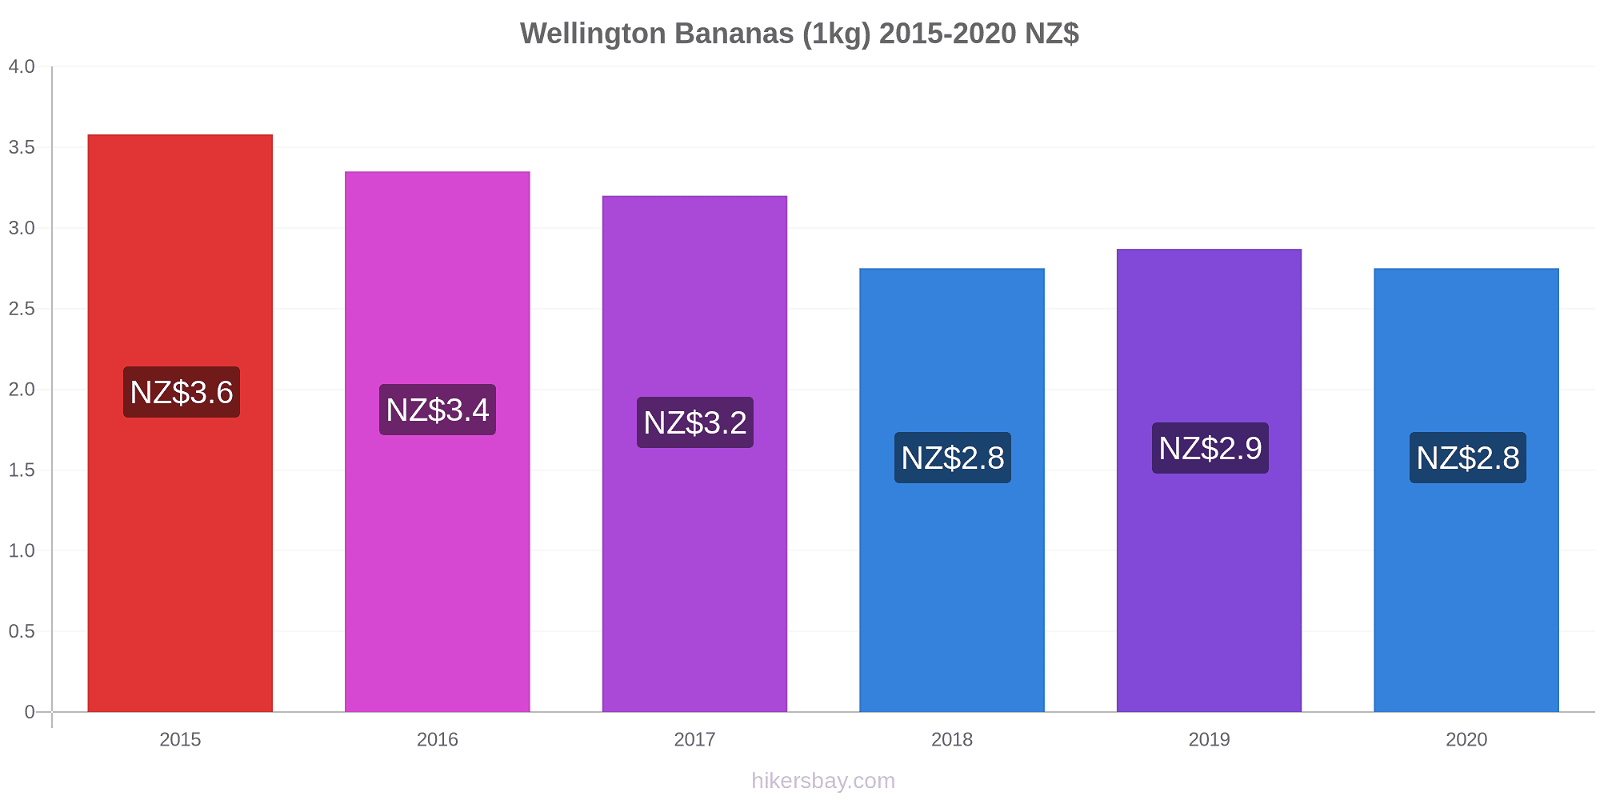 Wellington price changes Bananas (1kg) hikersbay.com